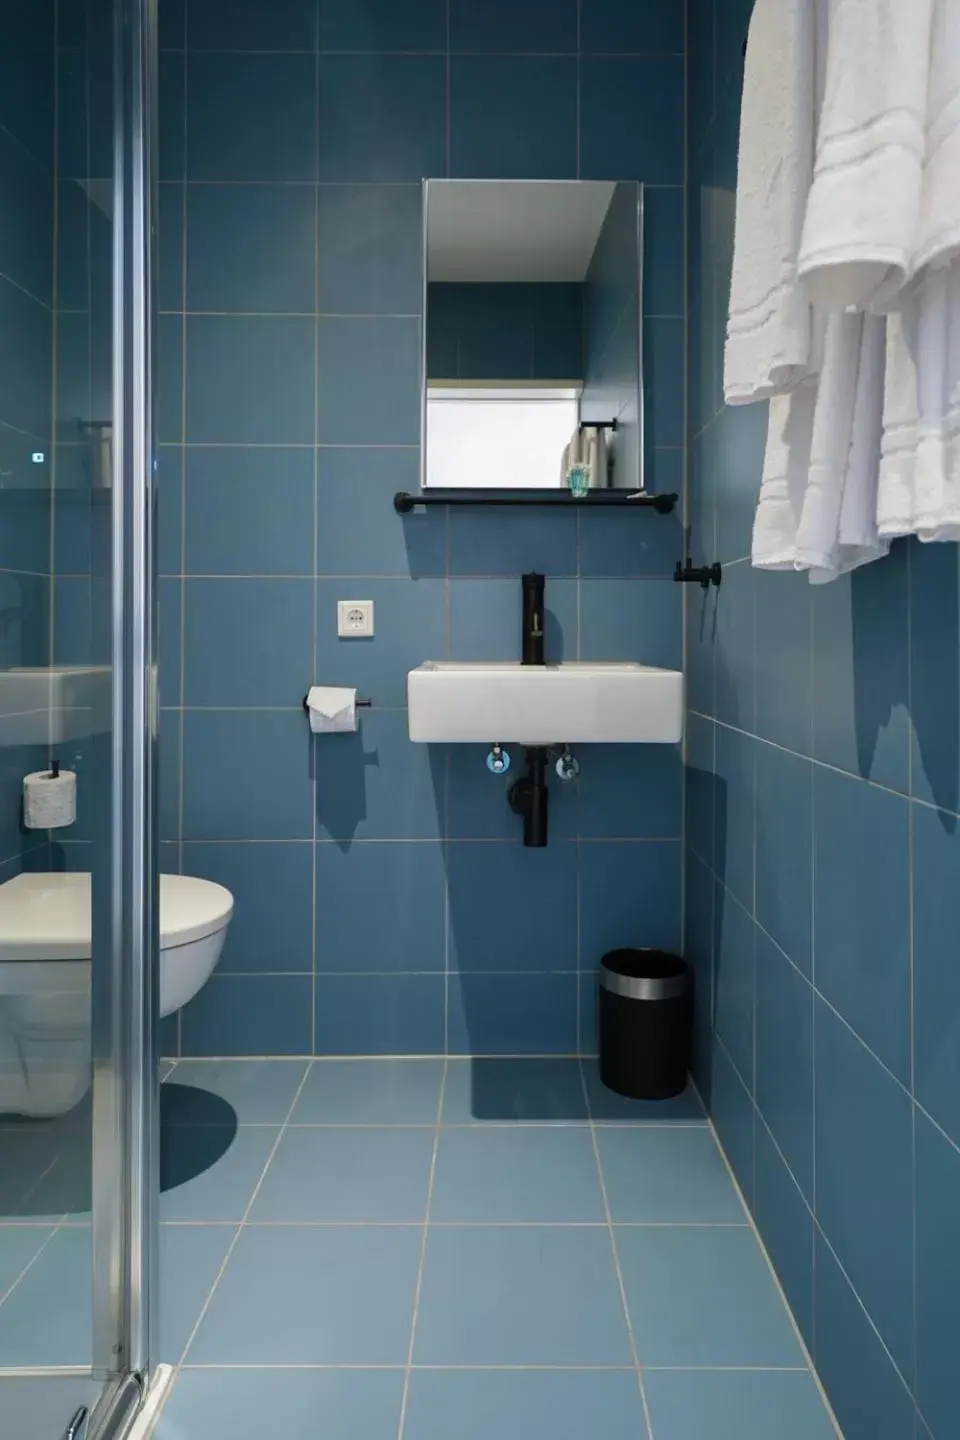 Bathroom in Amistad hotel